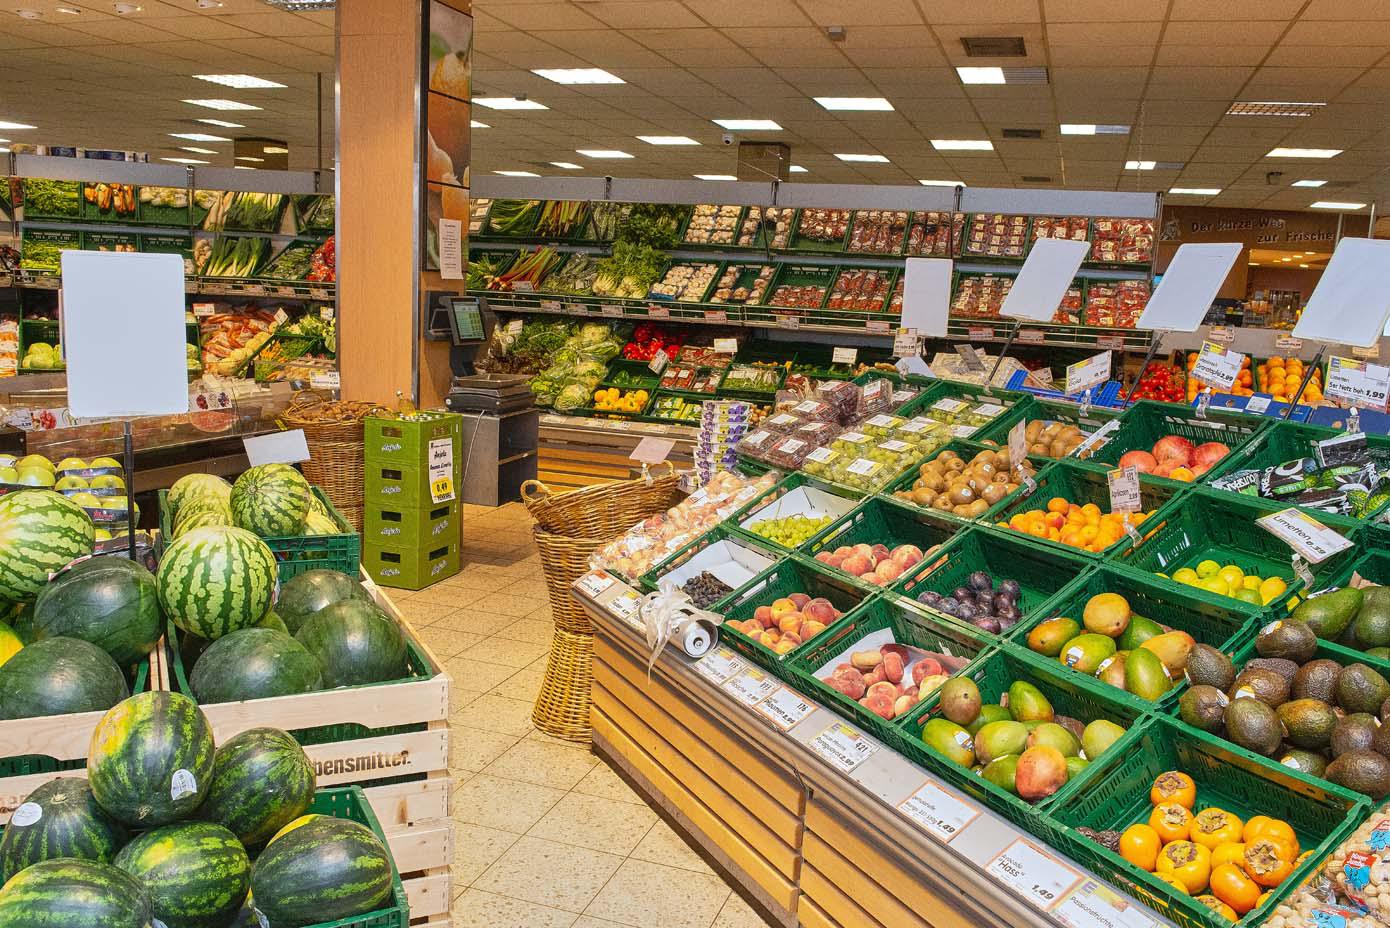 Obst- und Gemüseabteilung
Als Anbieter von Lebensmitteln liegt uns die Frischeabteilung für Obst & Gemüse ganz besonders am Herzen. Von EDEKA erhalten wir täglich eine Lieferung mit knackigem Obst und Gemüse.